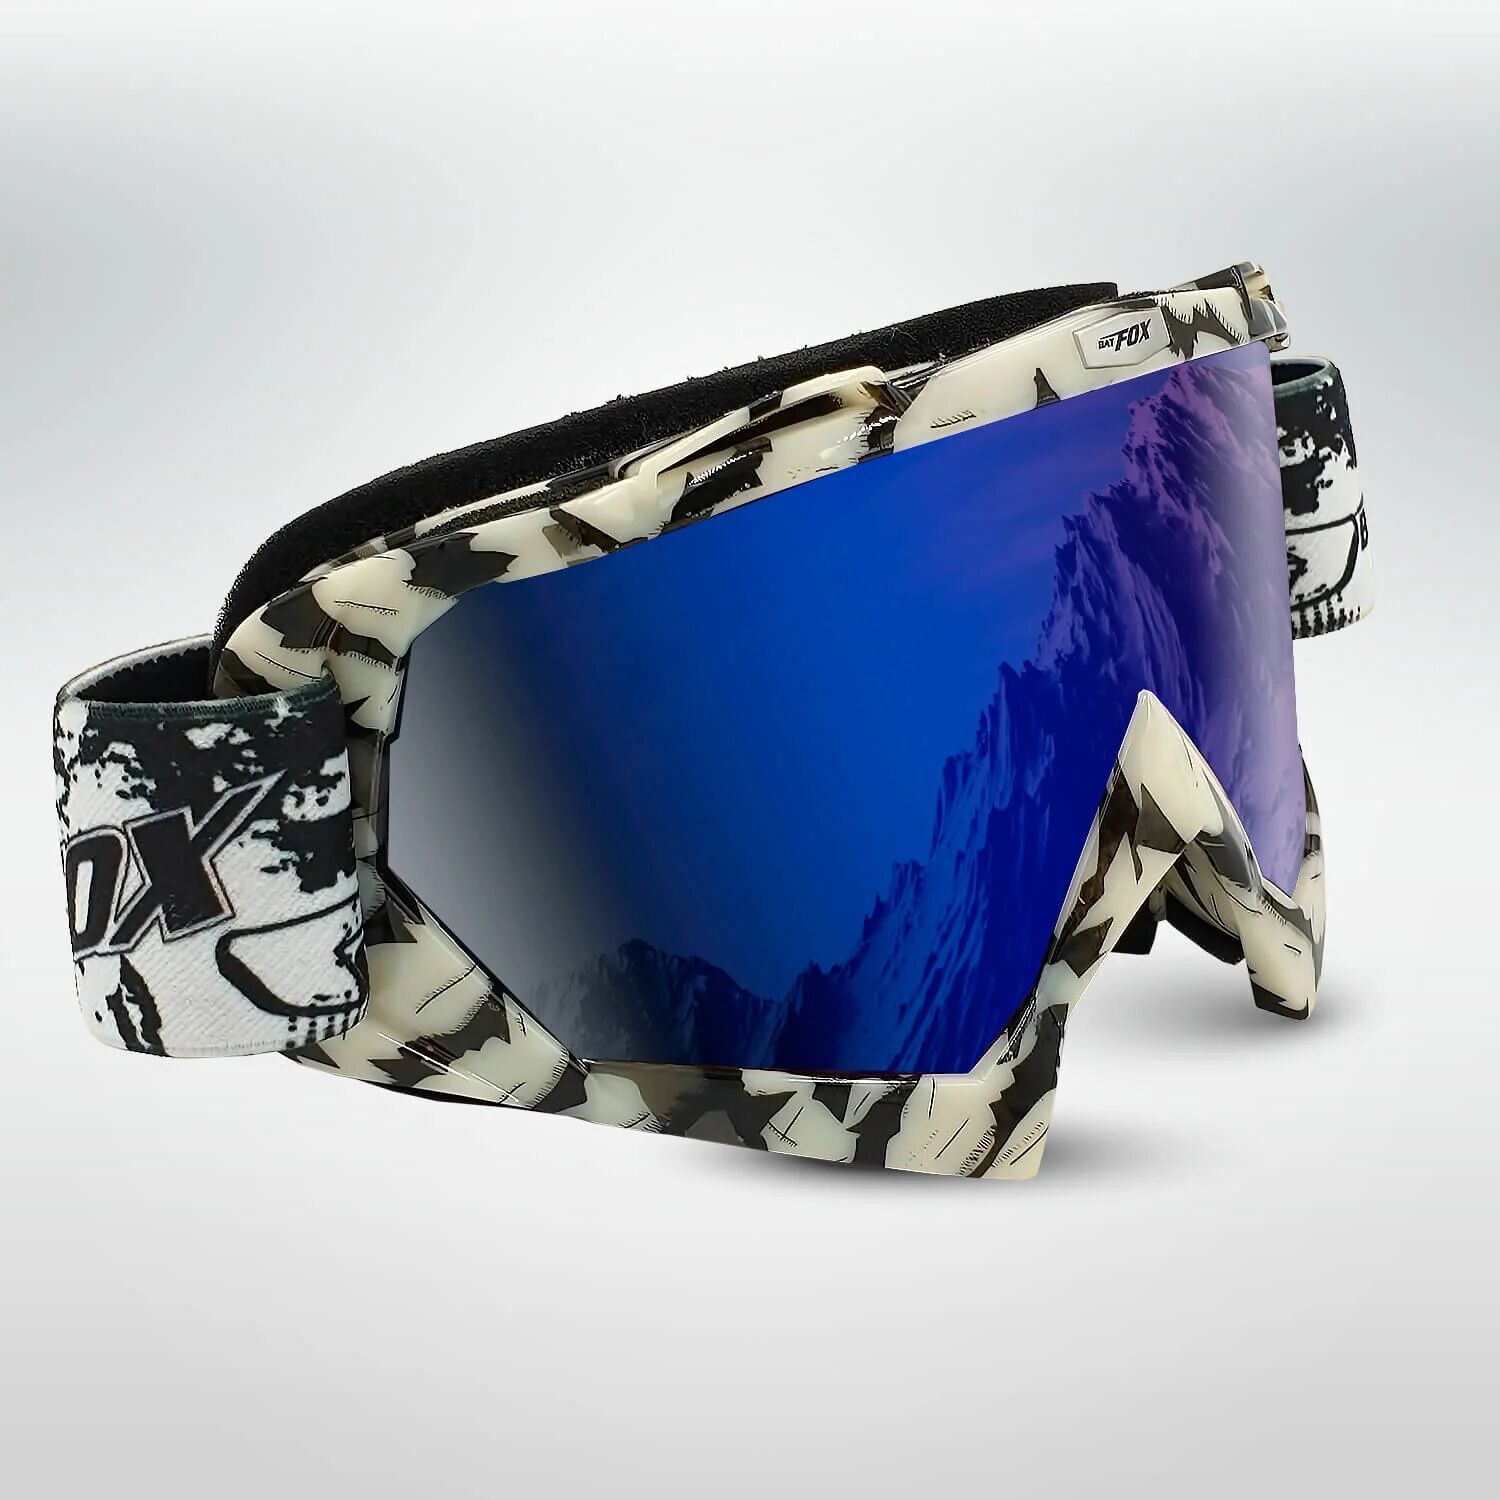 CoolSnow.dk - Populært udstyr og skibriller til din skiferie! FLAKE Speedy Zebra Laskettelulasit